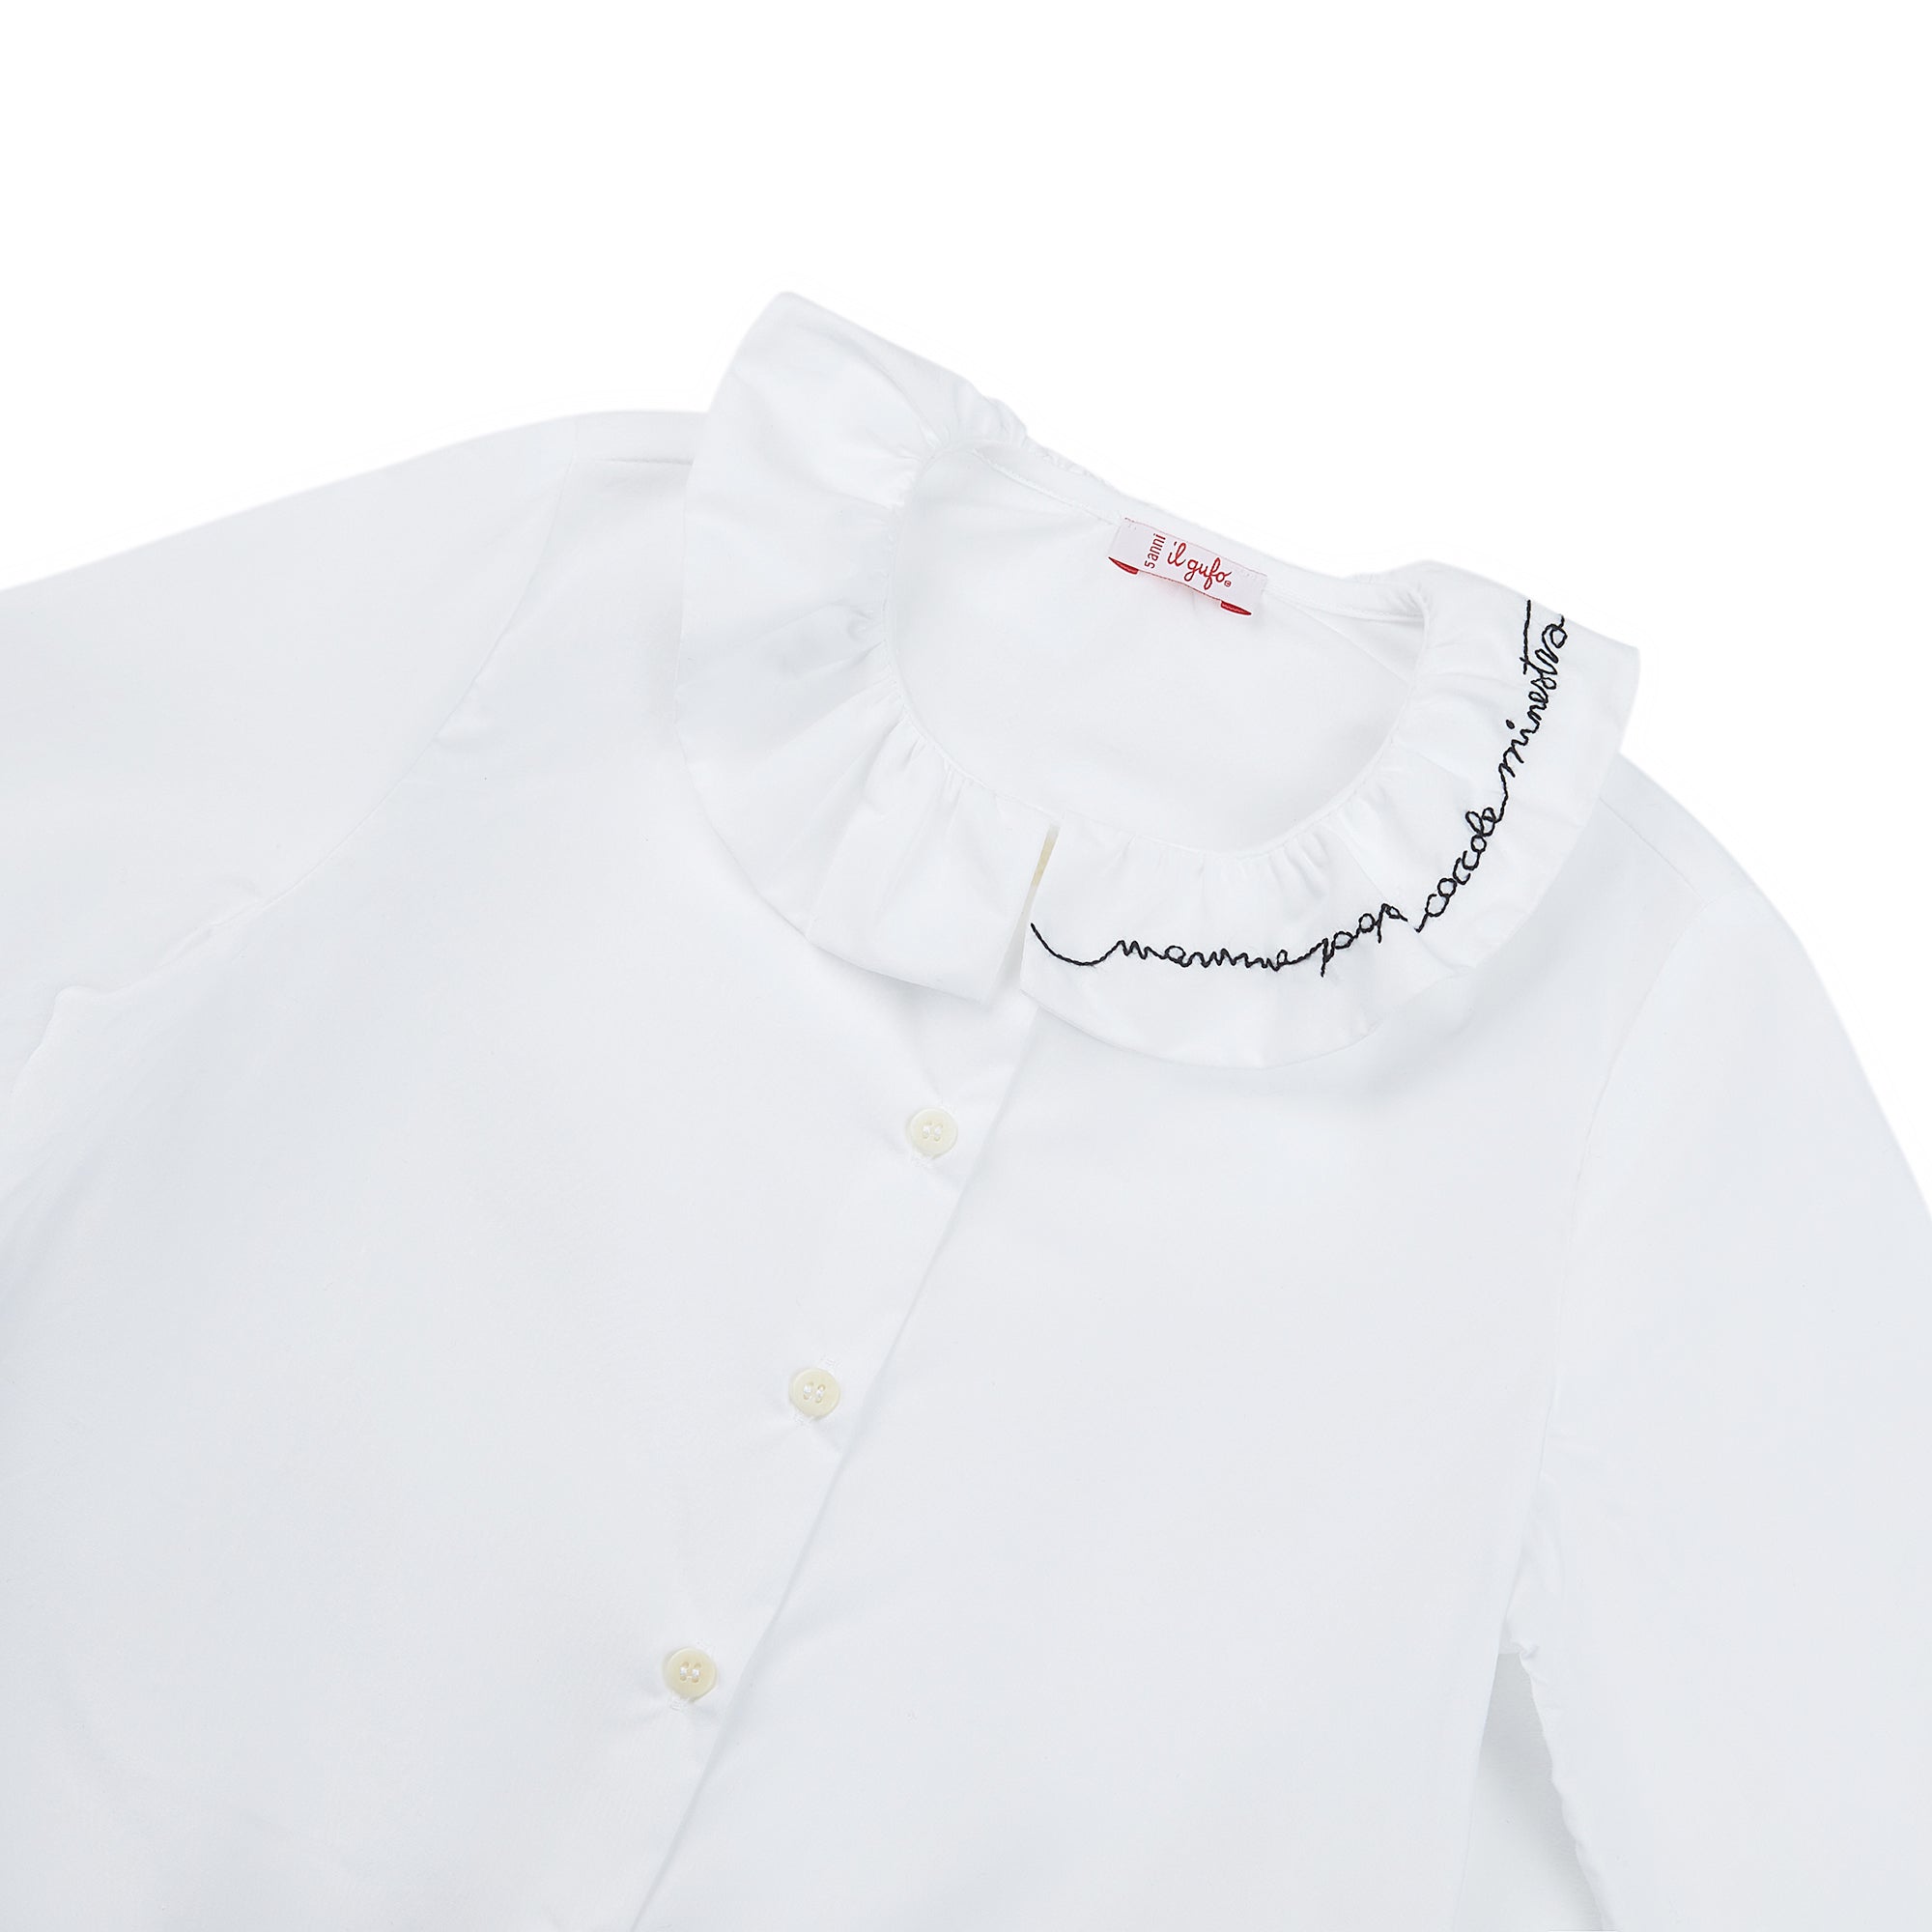 Girls White Lace Cotton Shirt